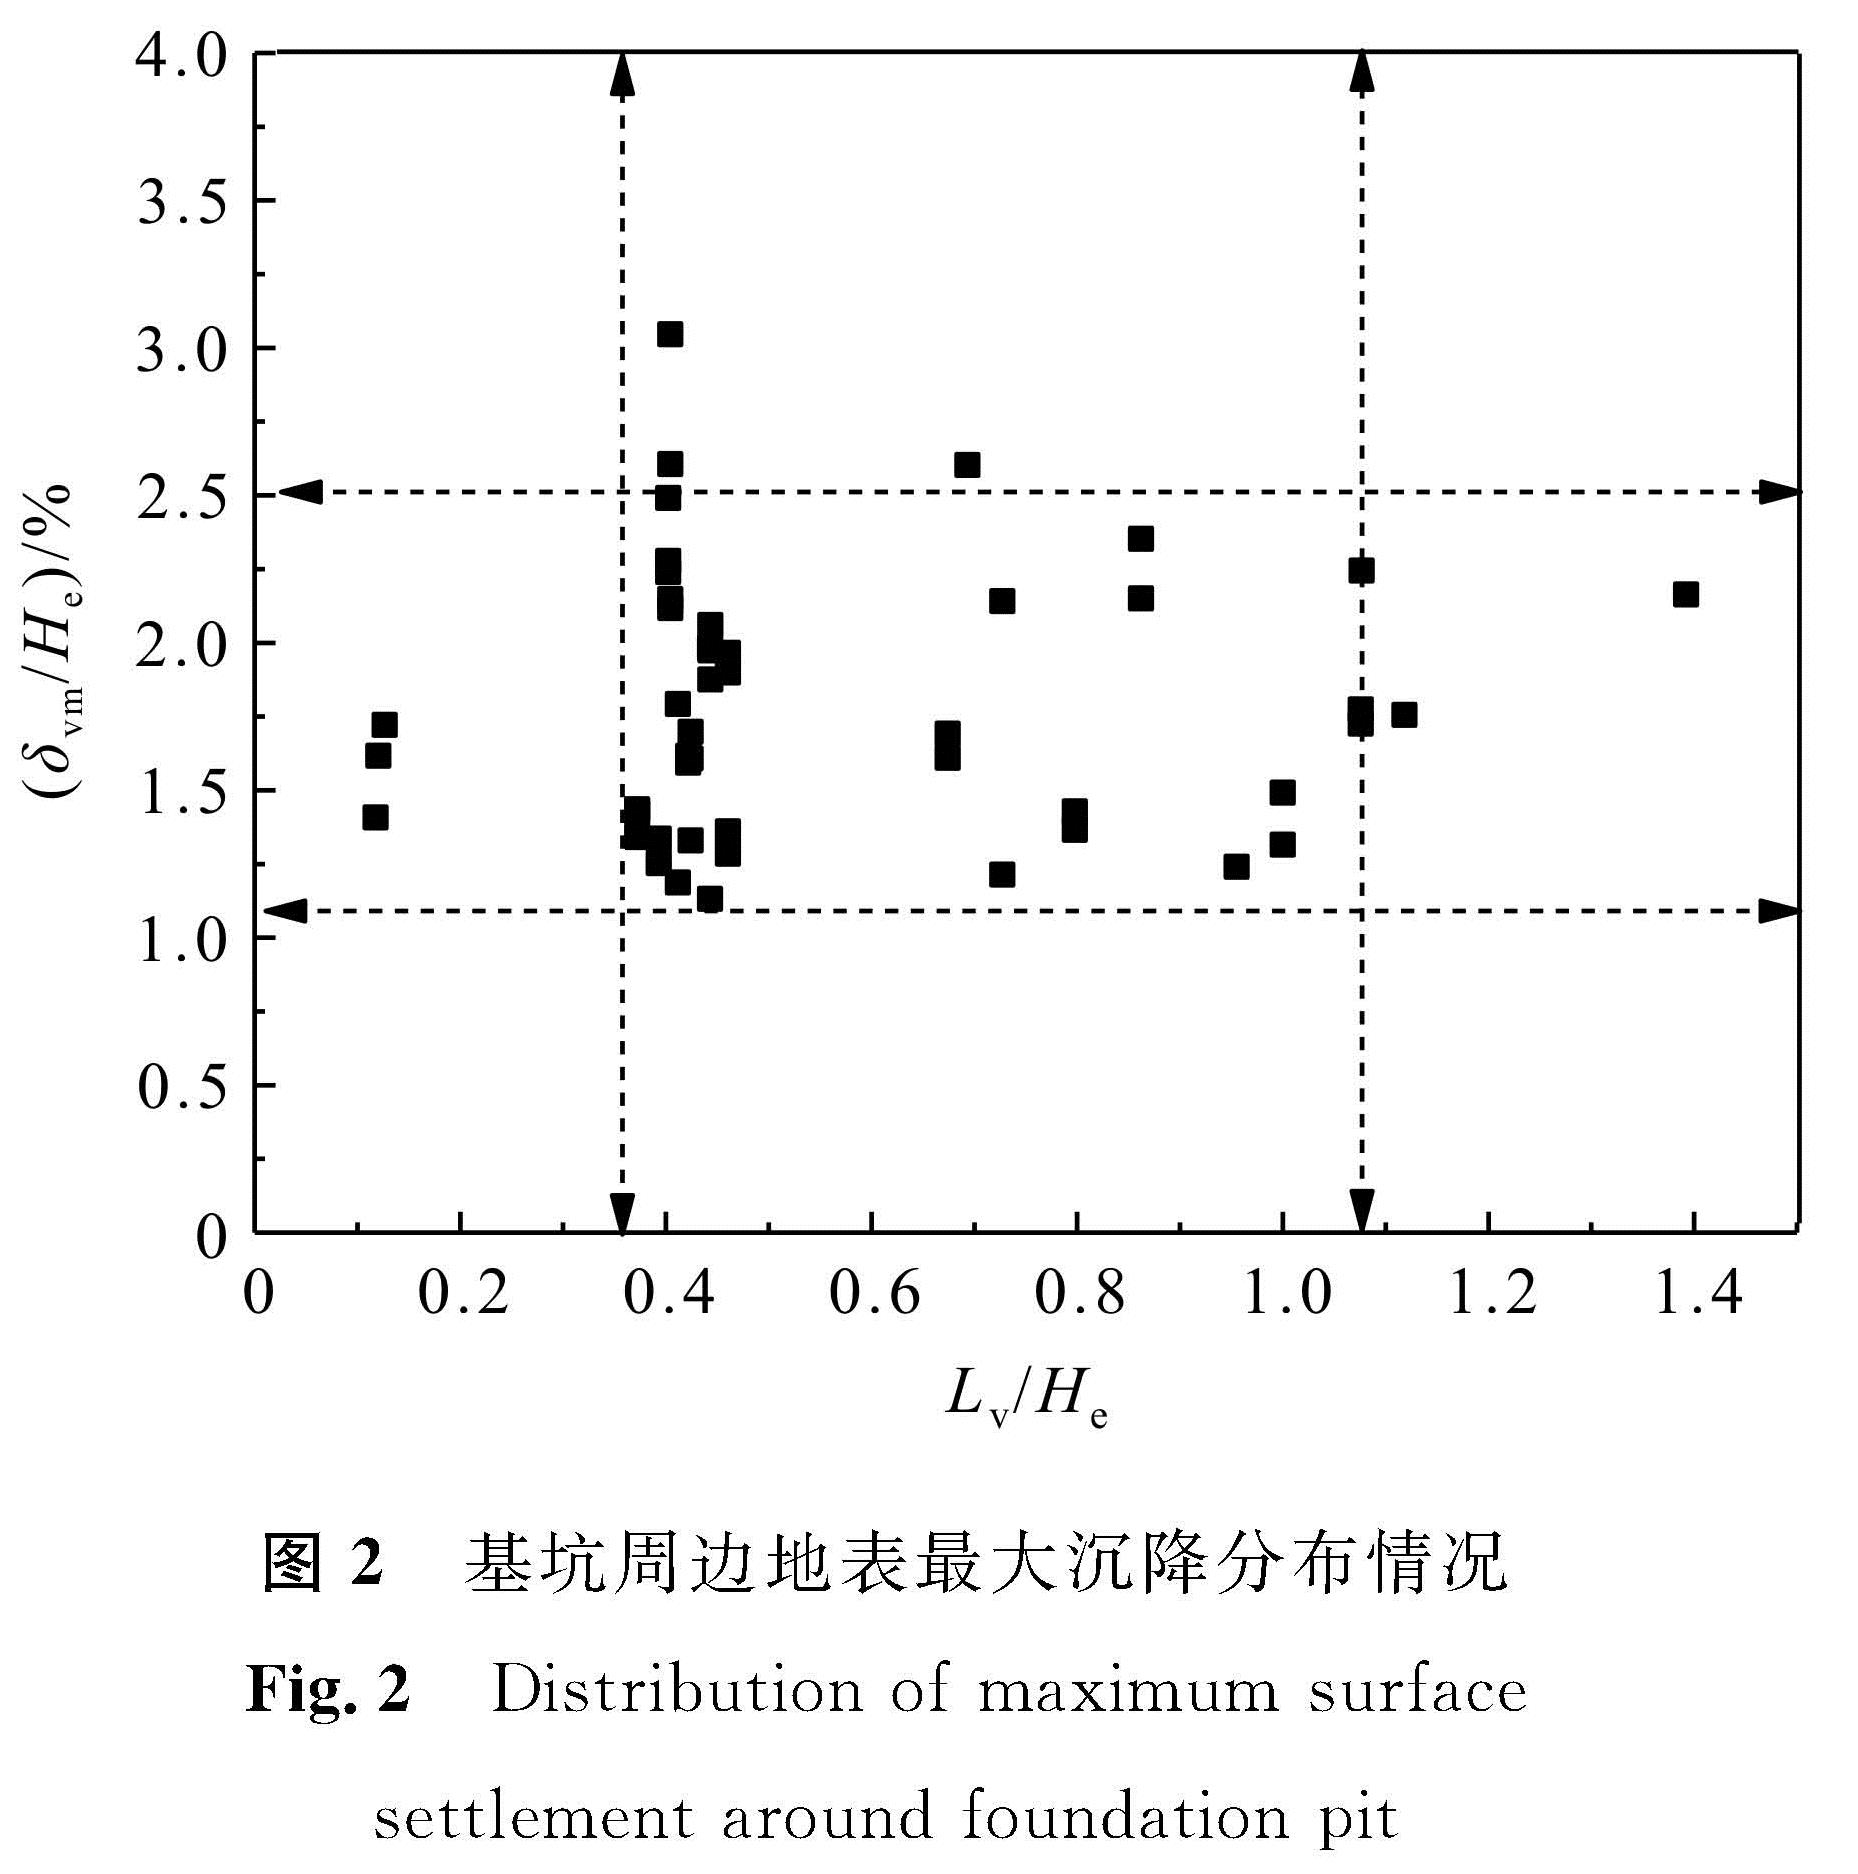 图2 基坑周边地表最大沉降分布情况<br/>Fig.2 Distribution of maximum surface settlement around foundation pit